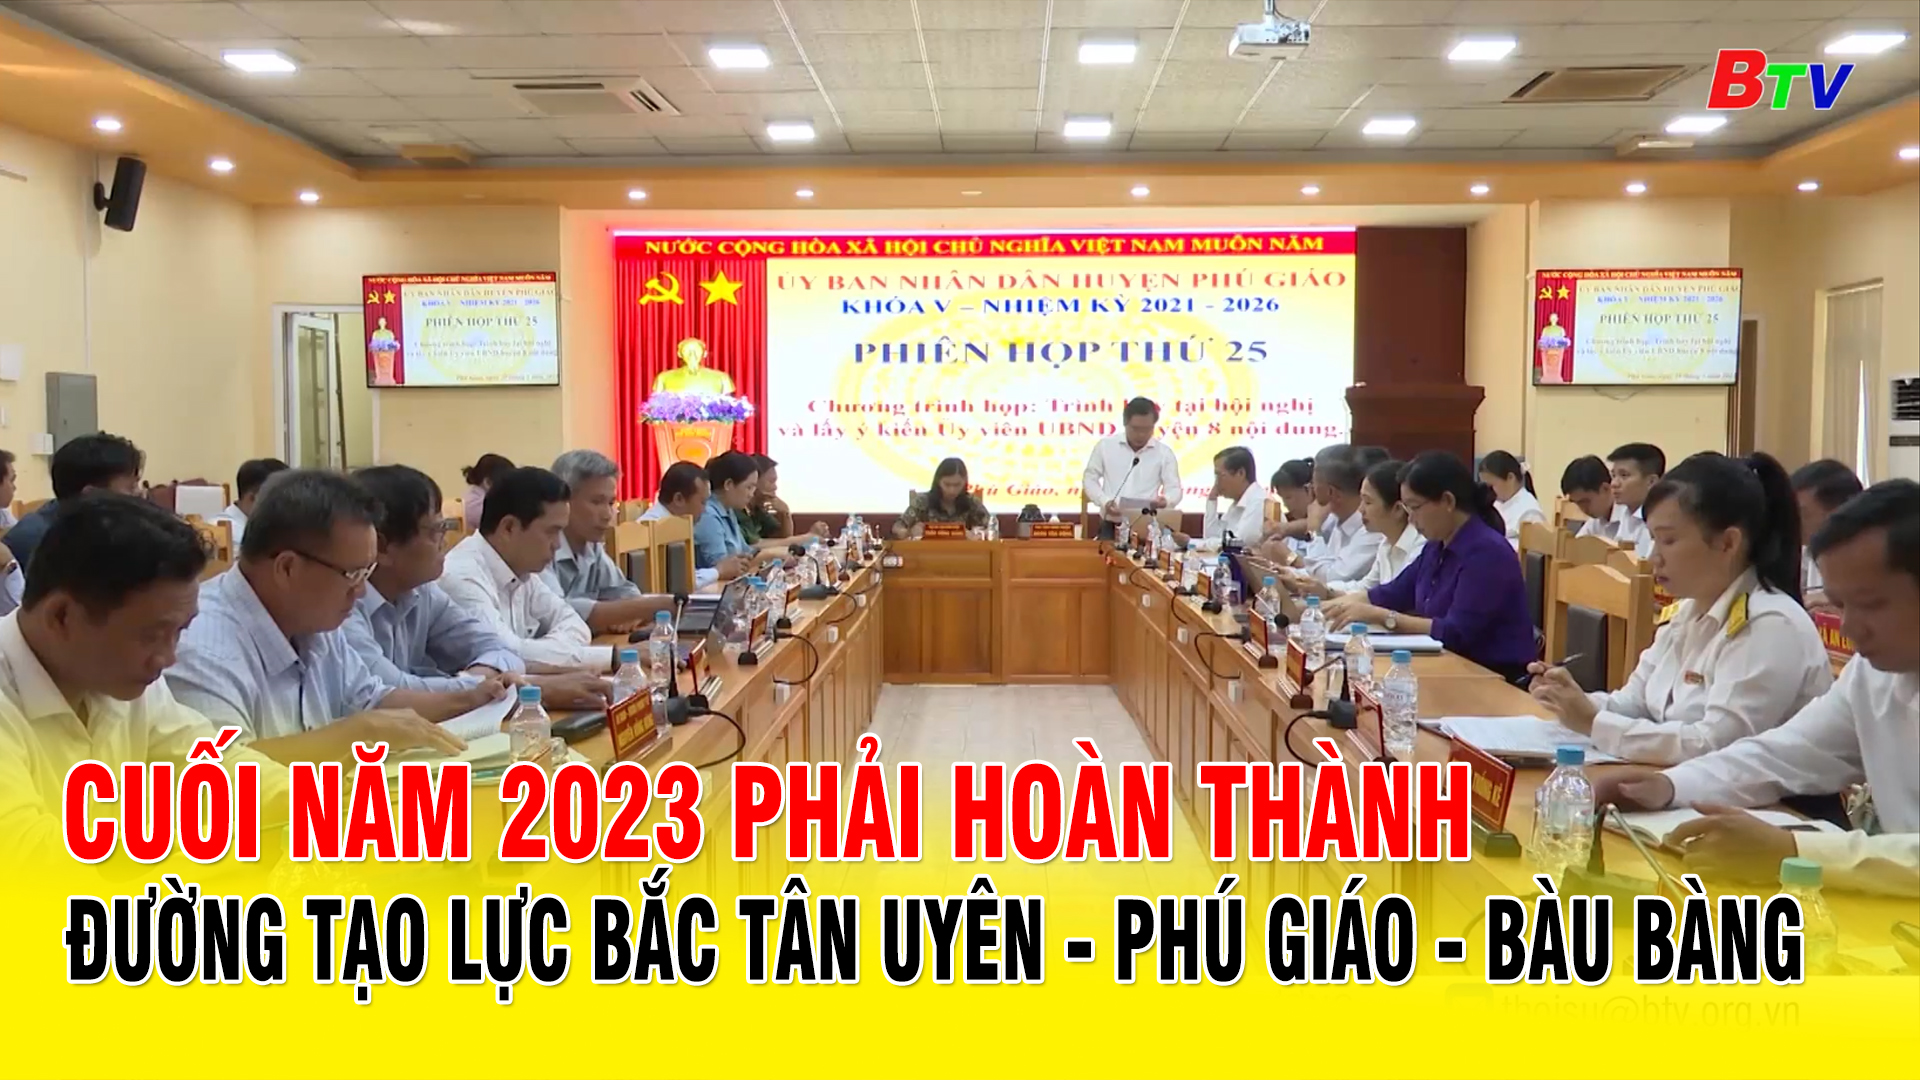 Cuối năm 2023 phải hoàn thành đường tạo lực Bắc Tân Uyên - Phú Giáo - Bàu Bàng